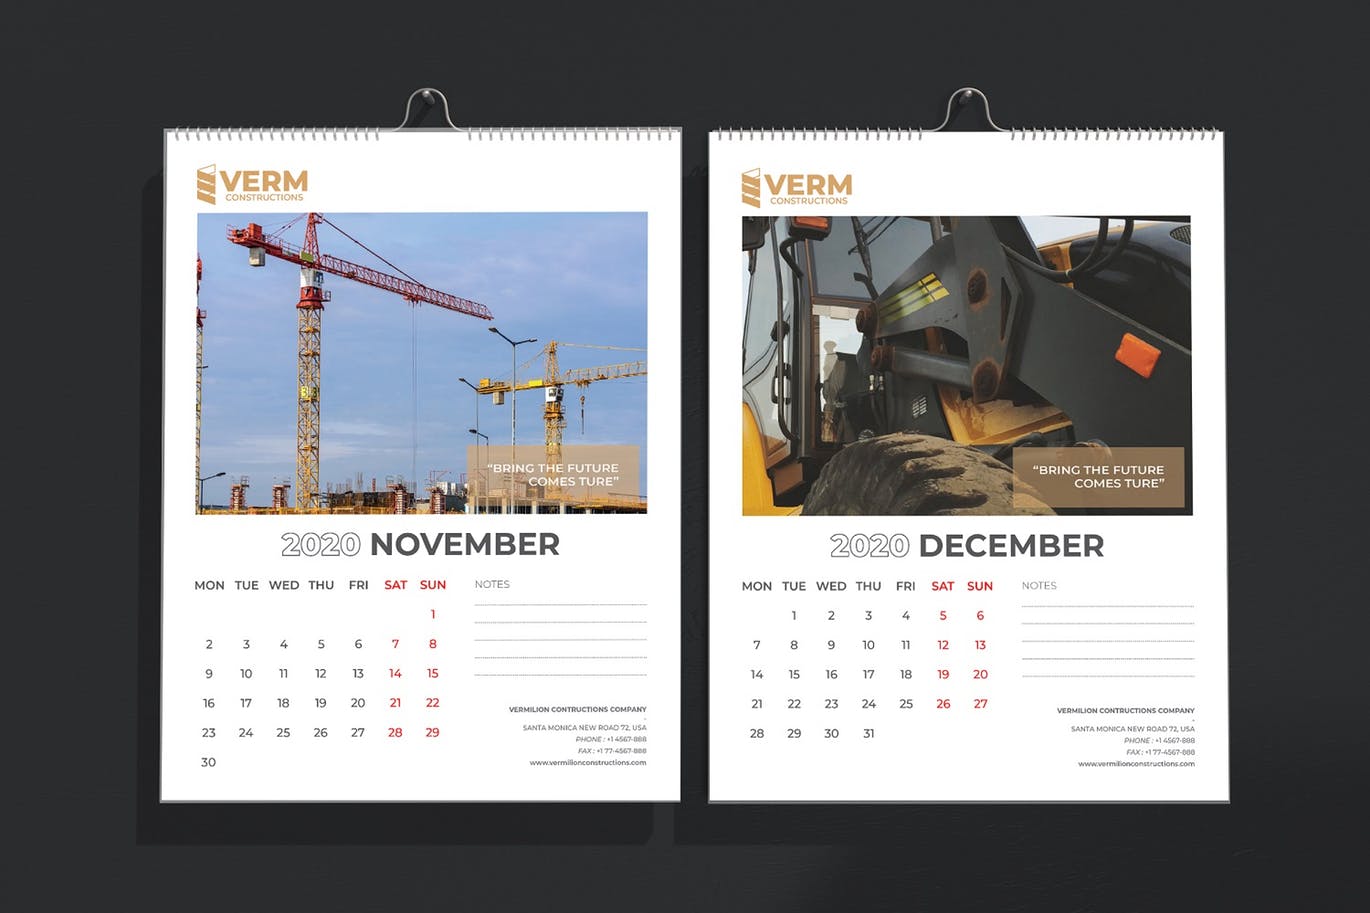 2020年建筑主题台历&挂墙日历表设计模板 Construction Wall & Table Calendar 2020插图(8)